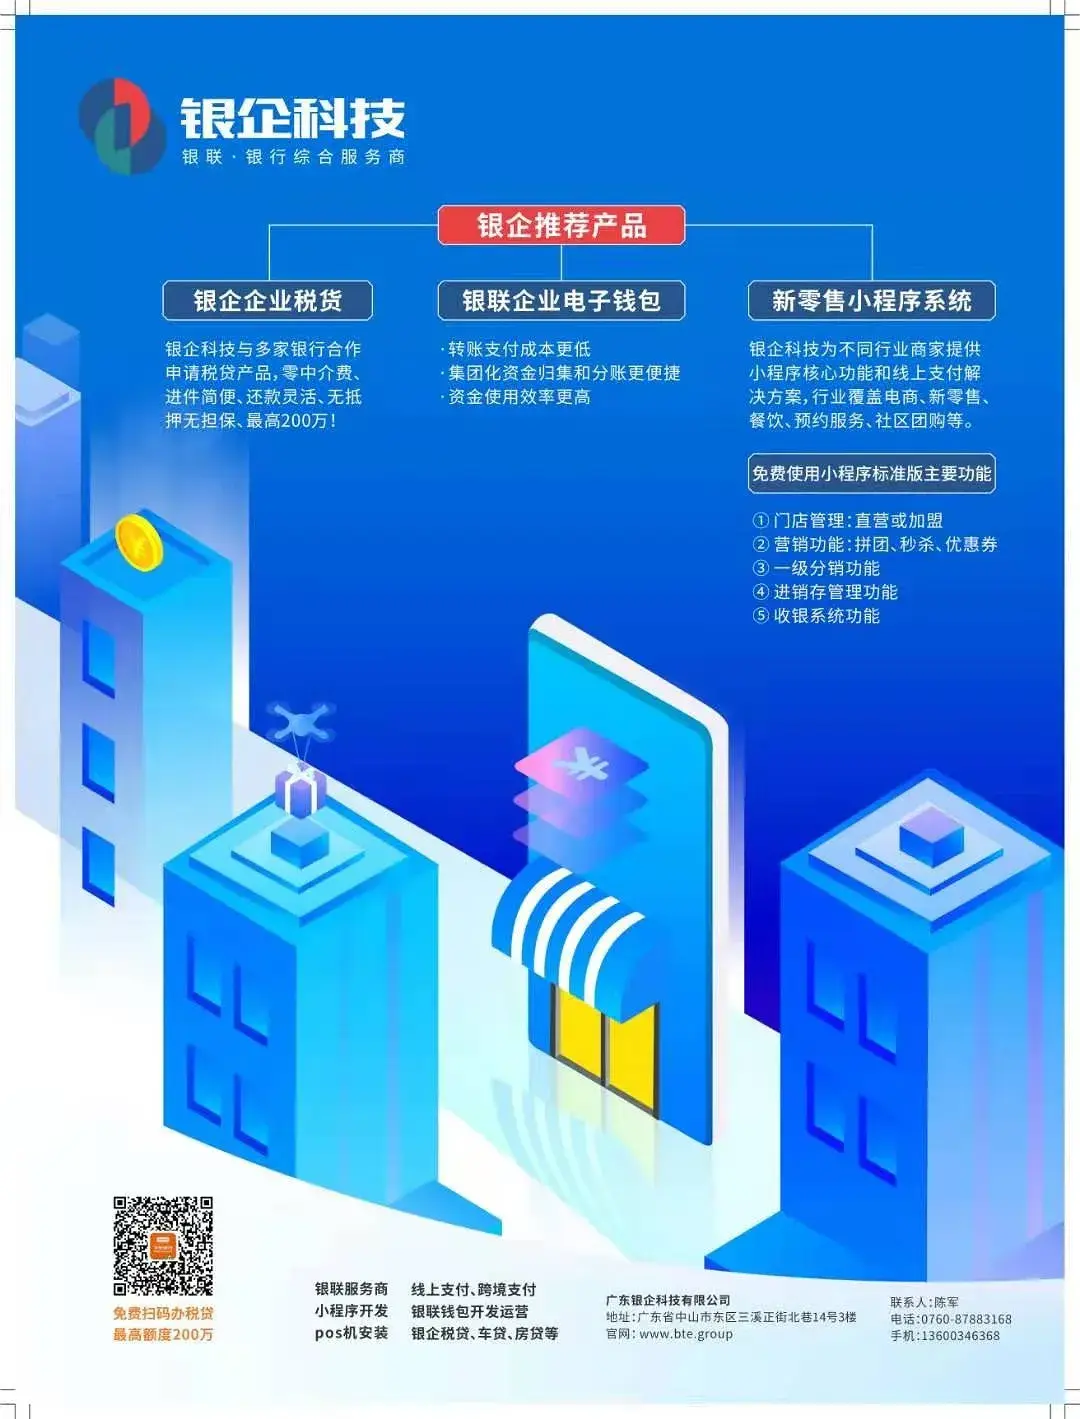 5G时代，深圳市民抢先体验！买手机还能领补贴，智能科技改变生活  第2张